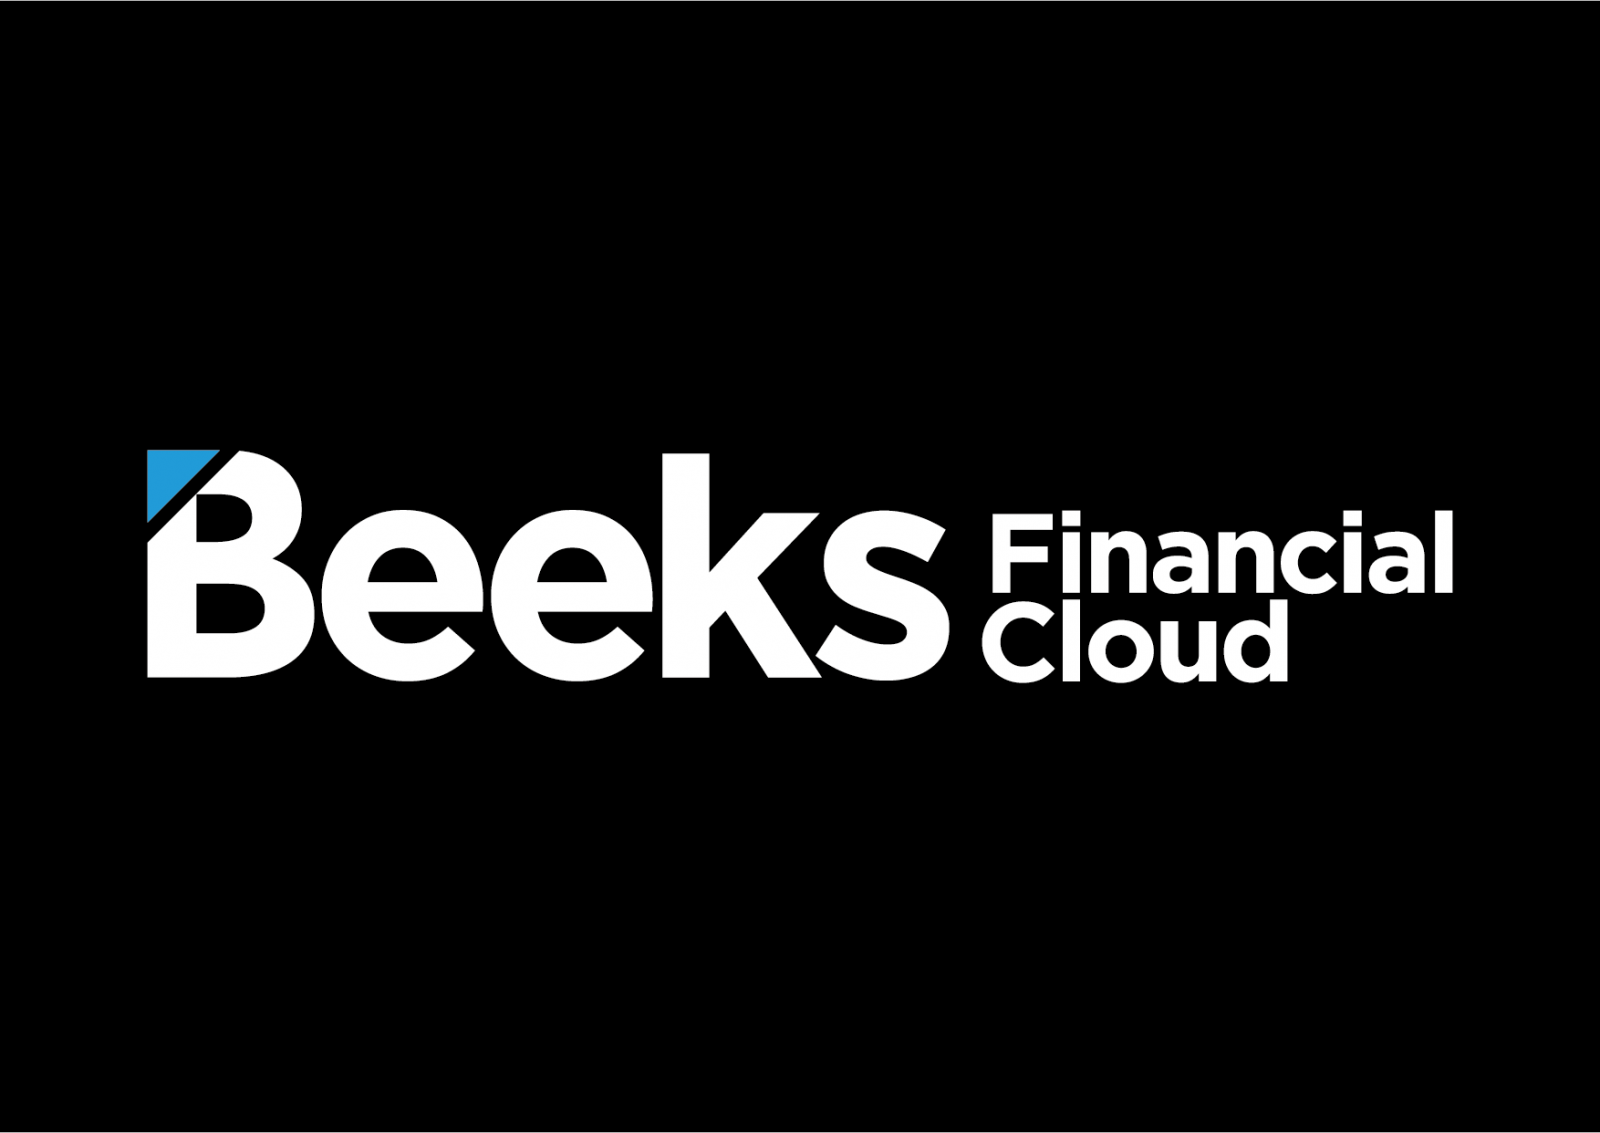 بلوغ إيرادات Beeks حواليّ 23.8 مليون جنيه استرليني، ولكن أين الأرباح